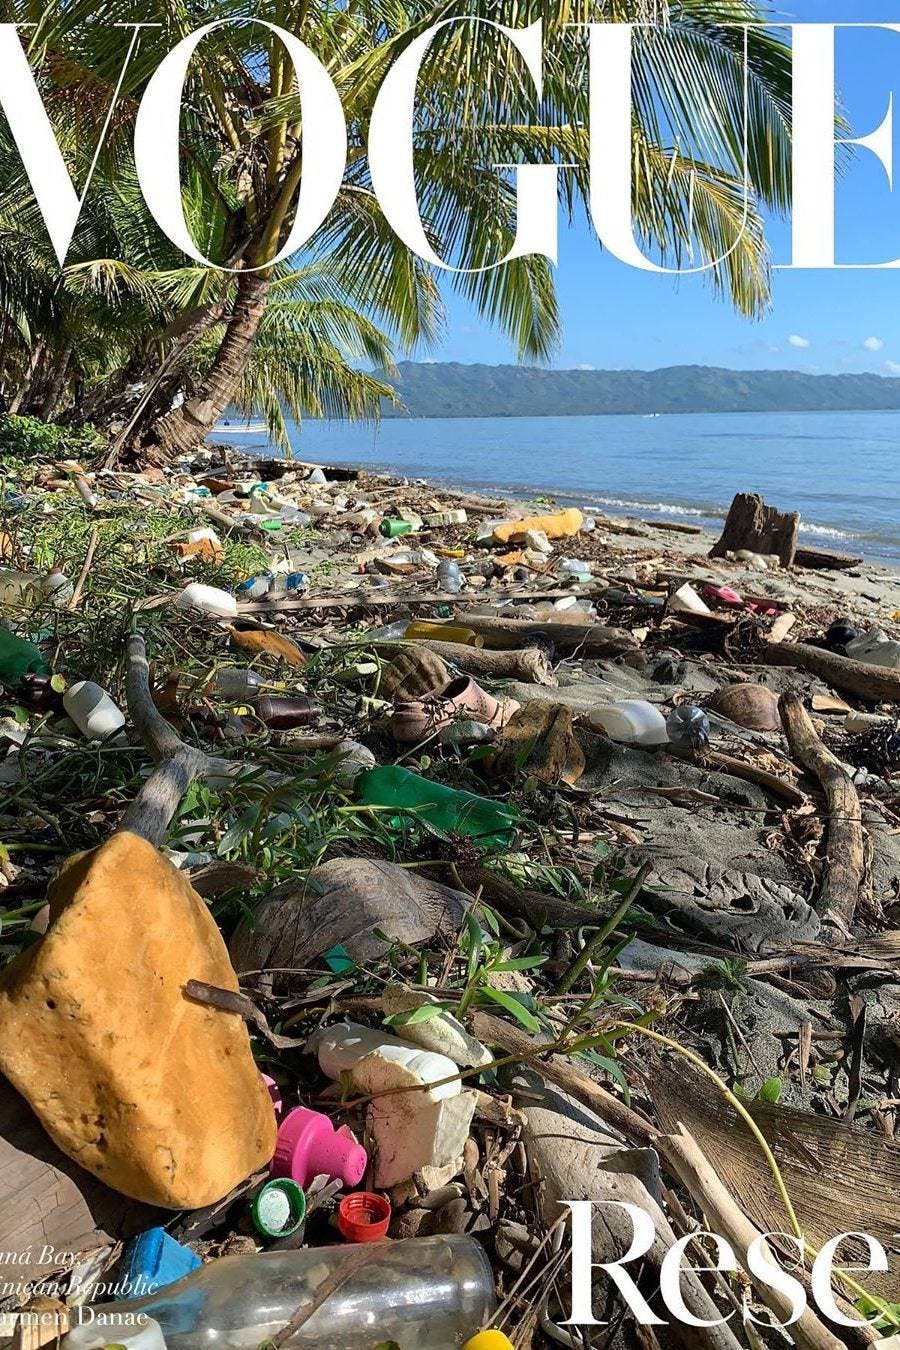 Vogue explica intención de fotografía con playa dominicana llena de basura